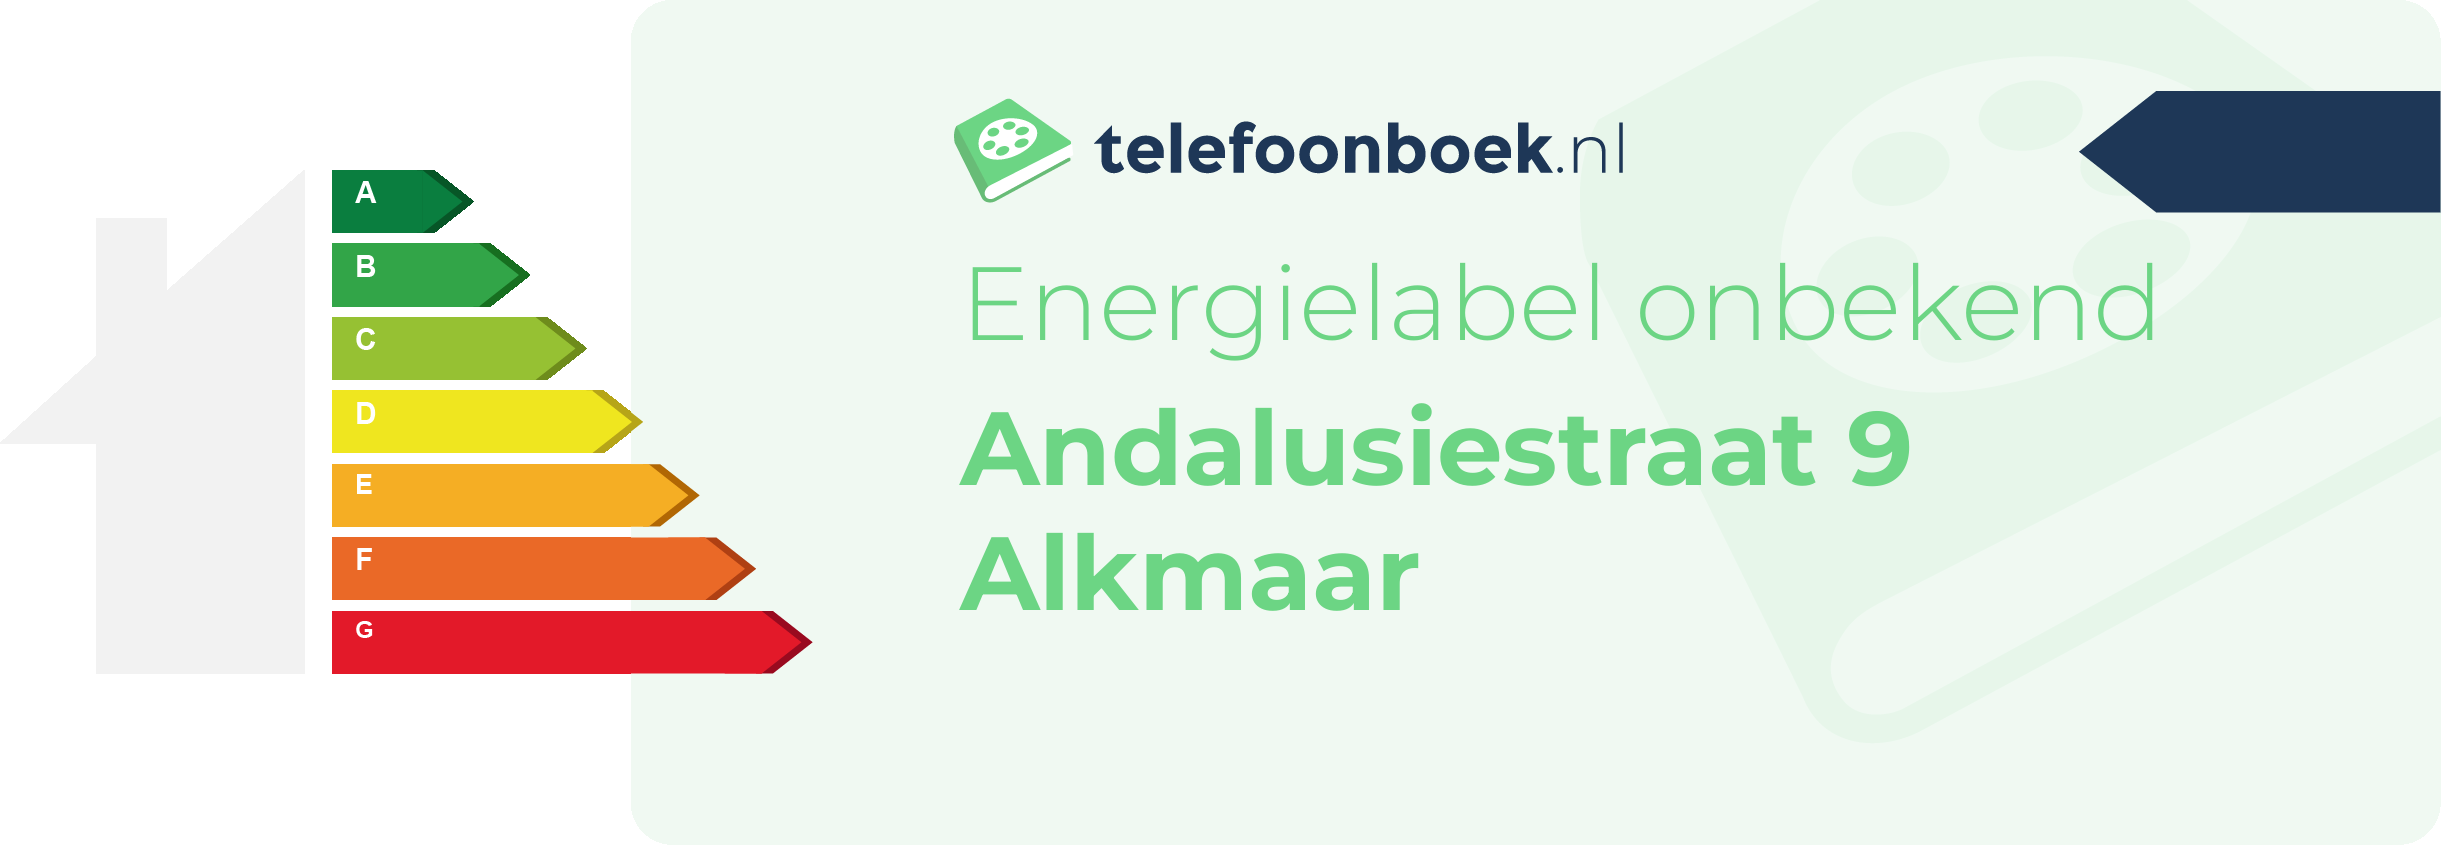 Energielabel Andalusiestraat 9 Alkmaar